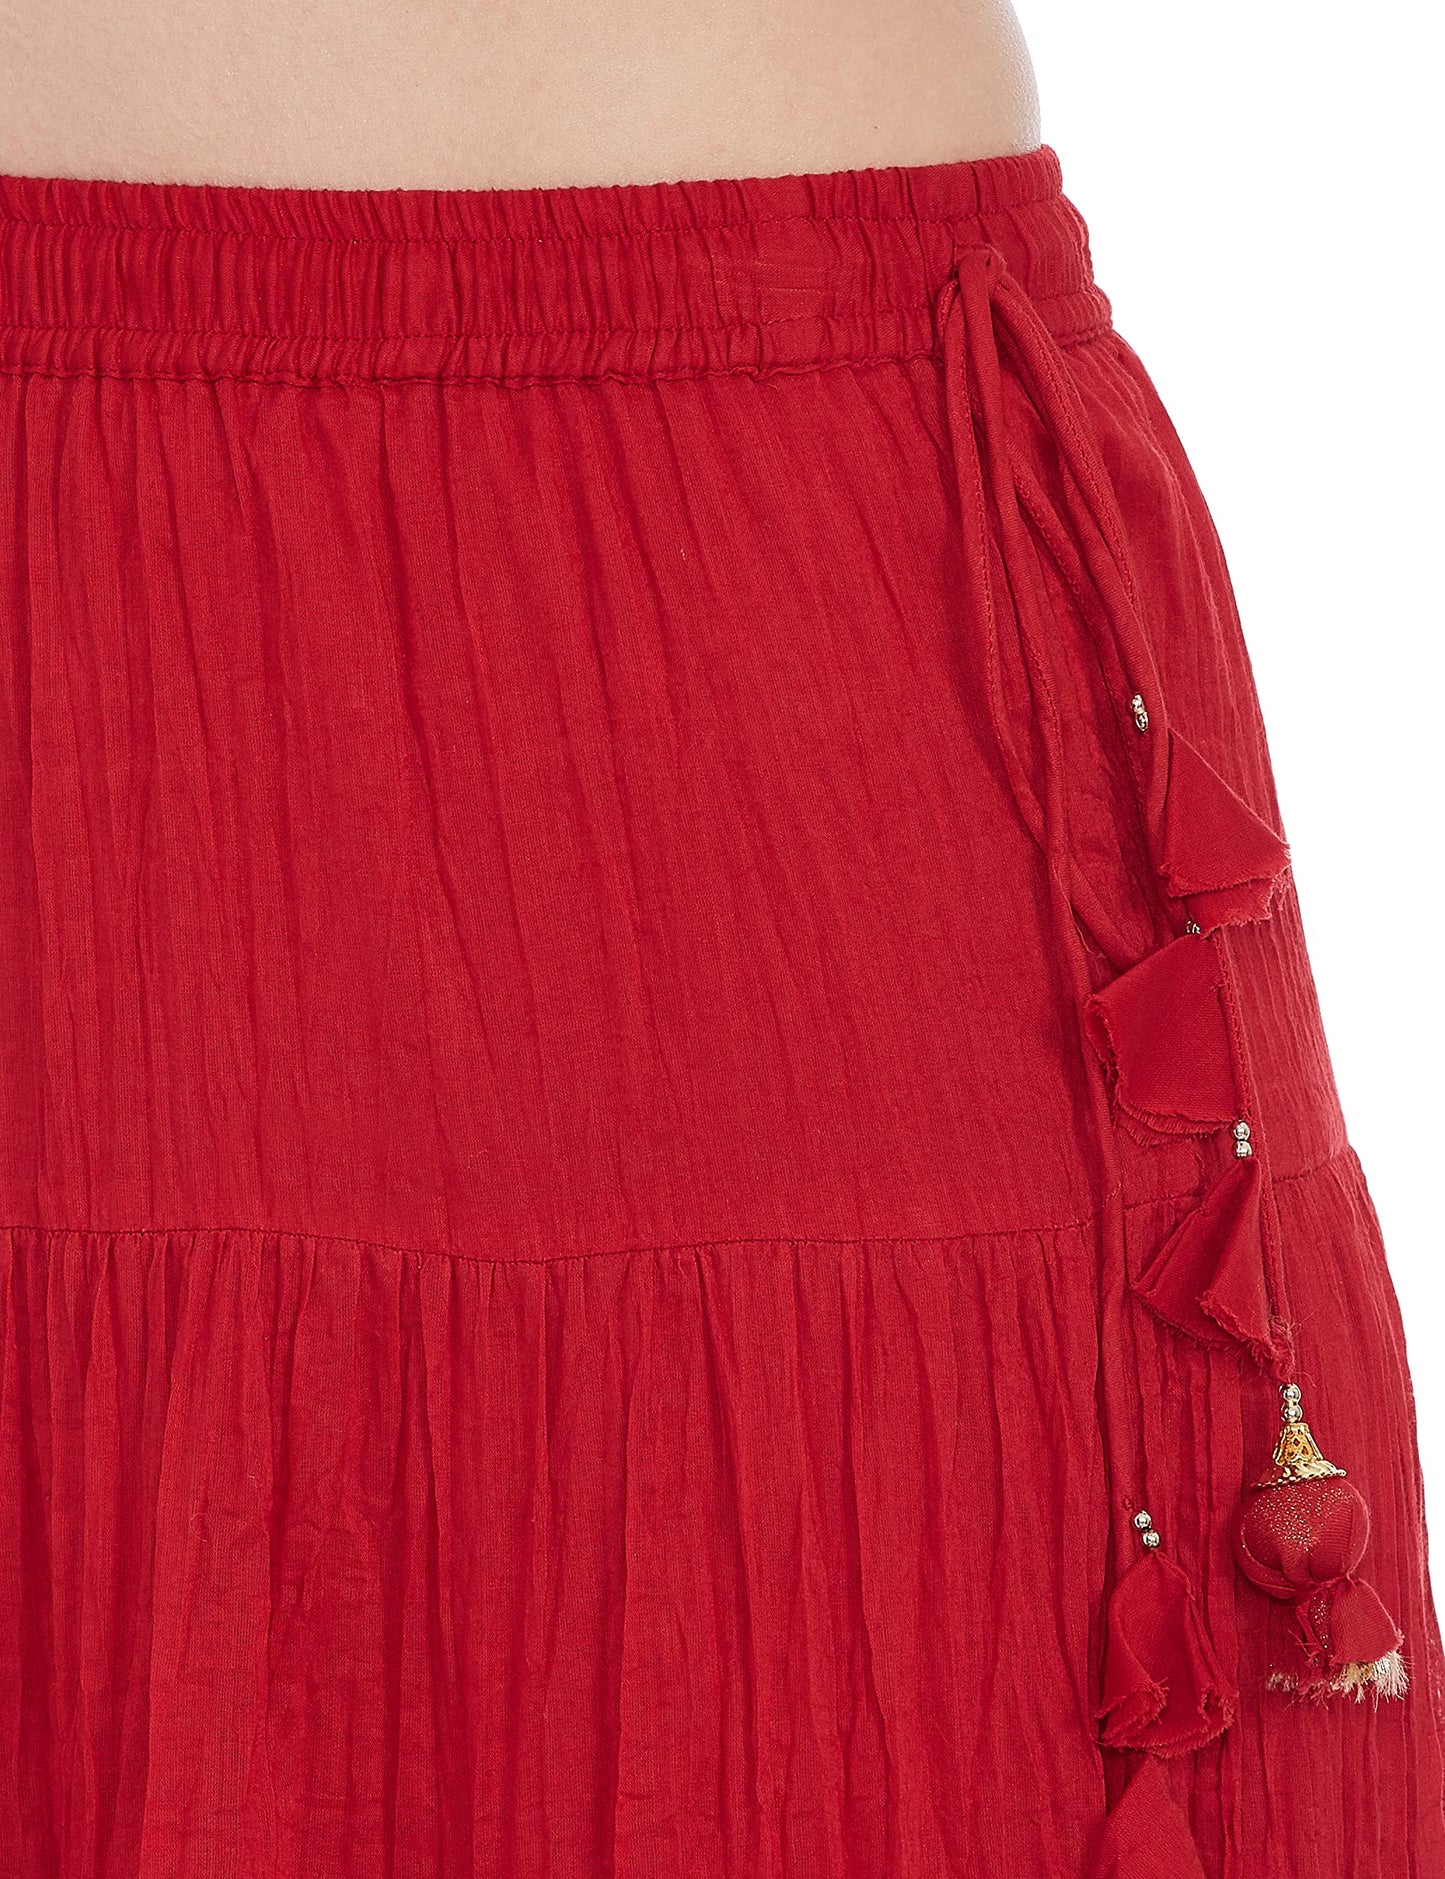 BIBA Women's Maxi Skirt (Red) 